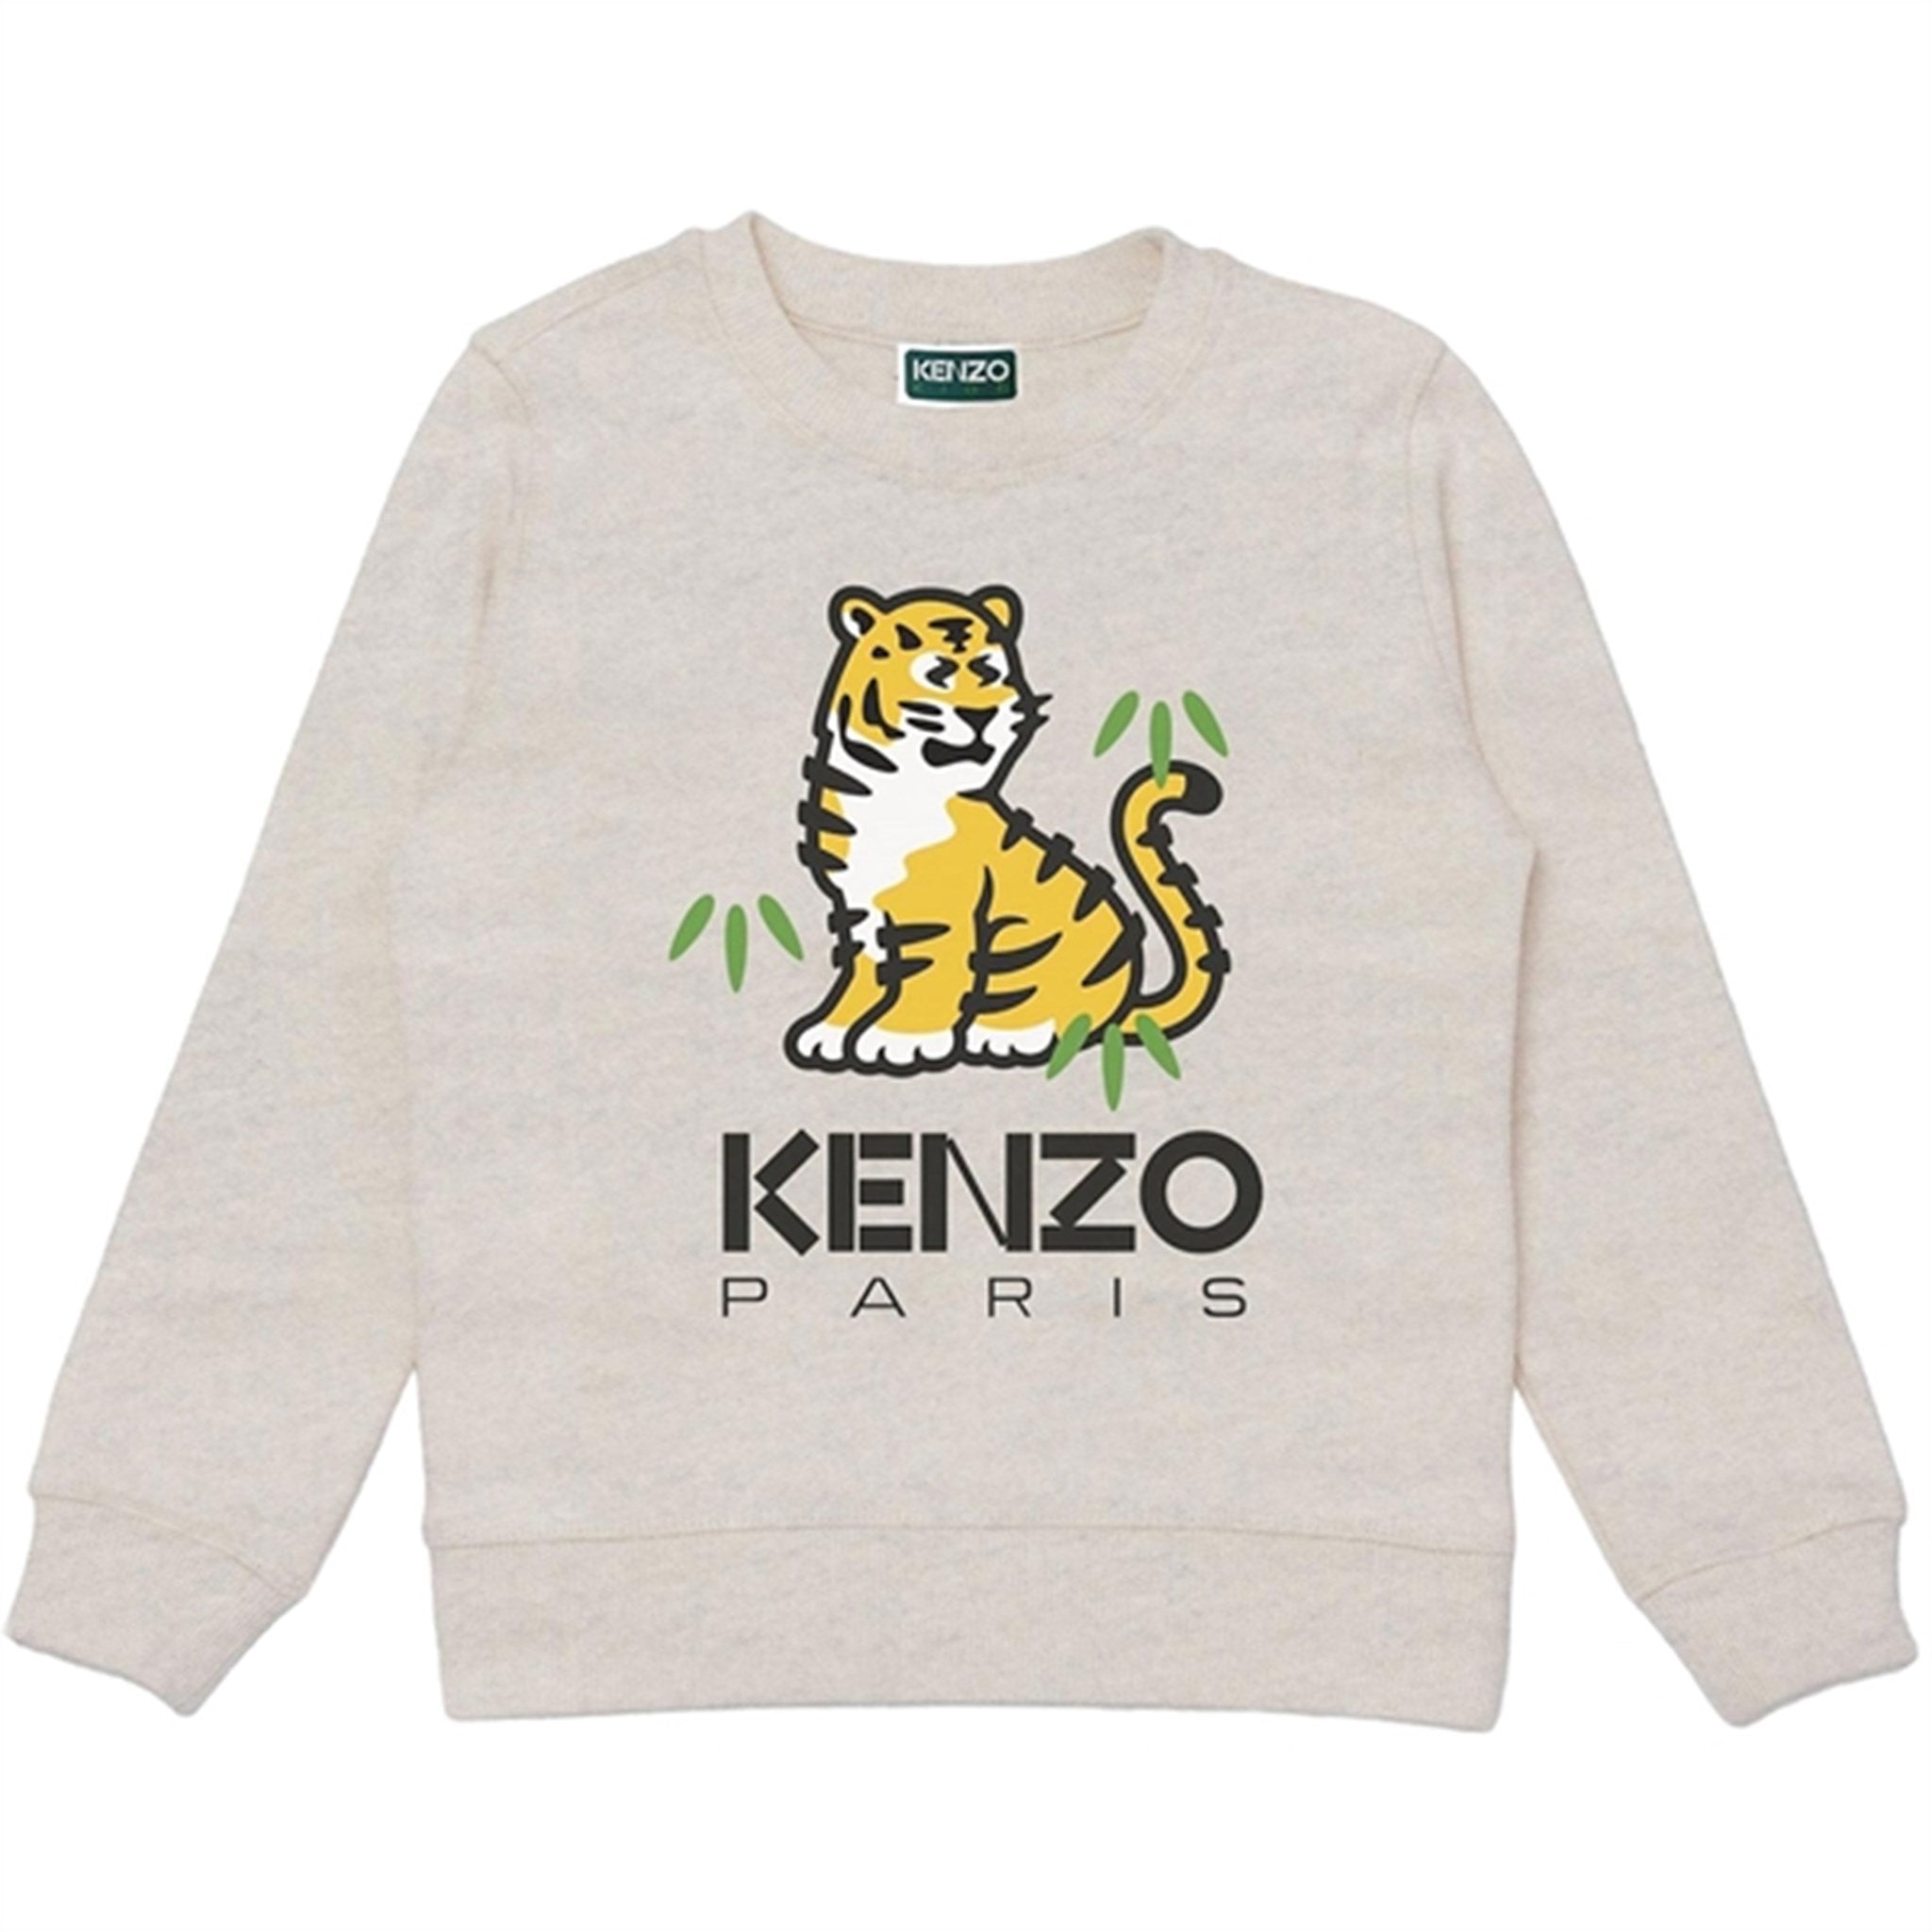 Kenzo Sweatshirt Light Grey